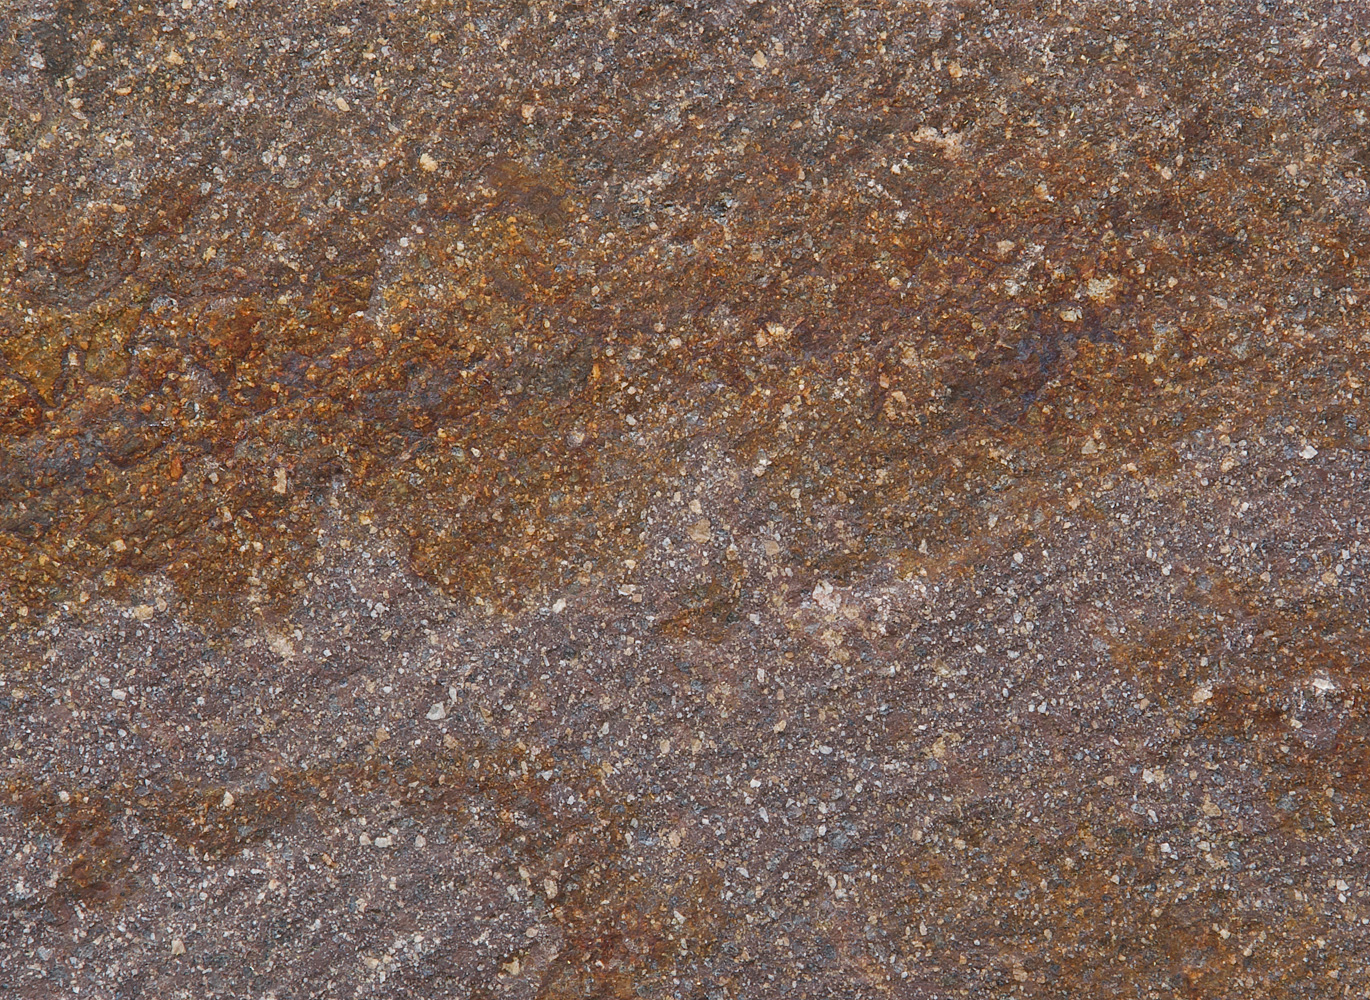 Hasított, bányanyers felületű, barnás színű trentinói KERN porfír